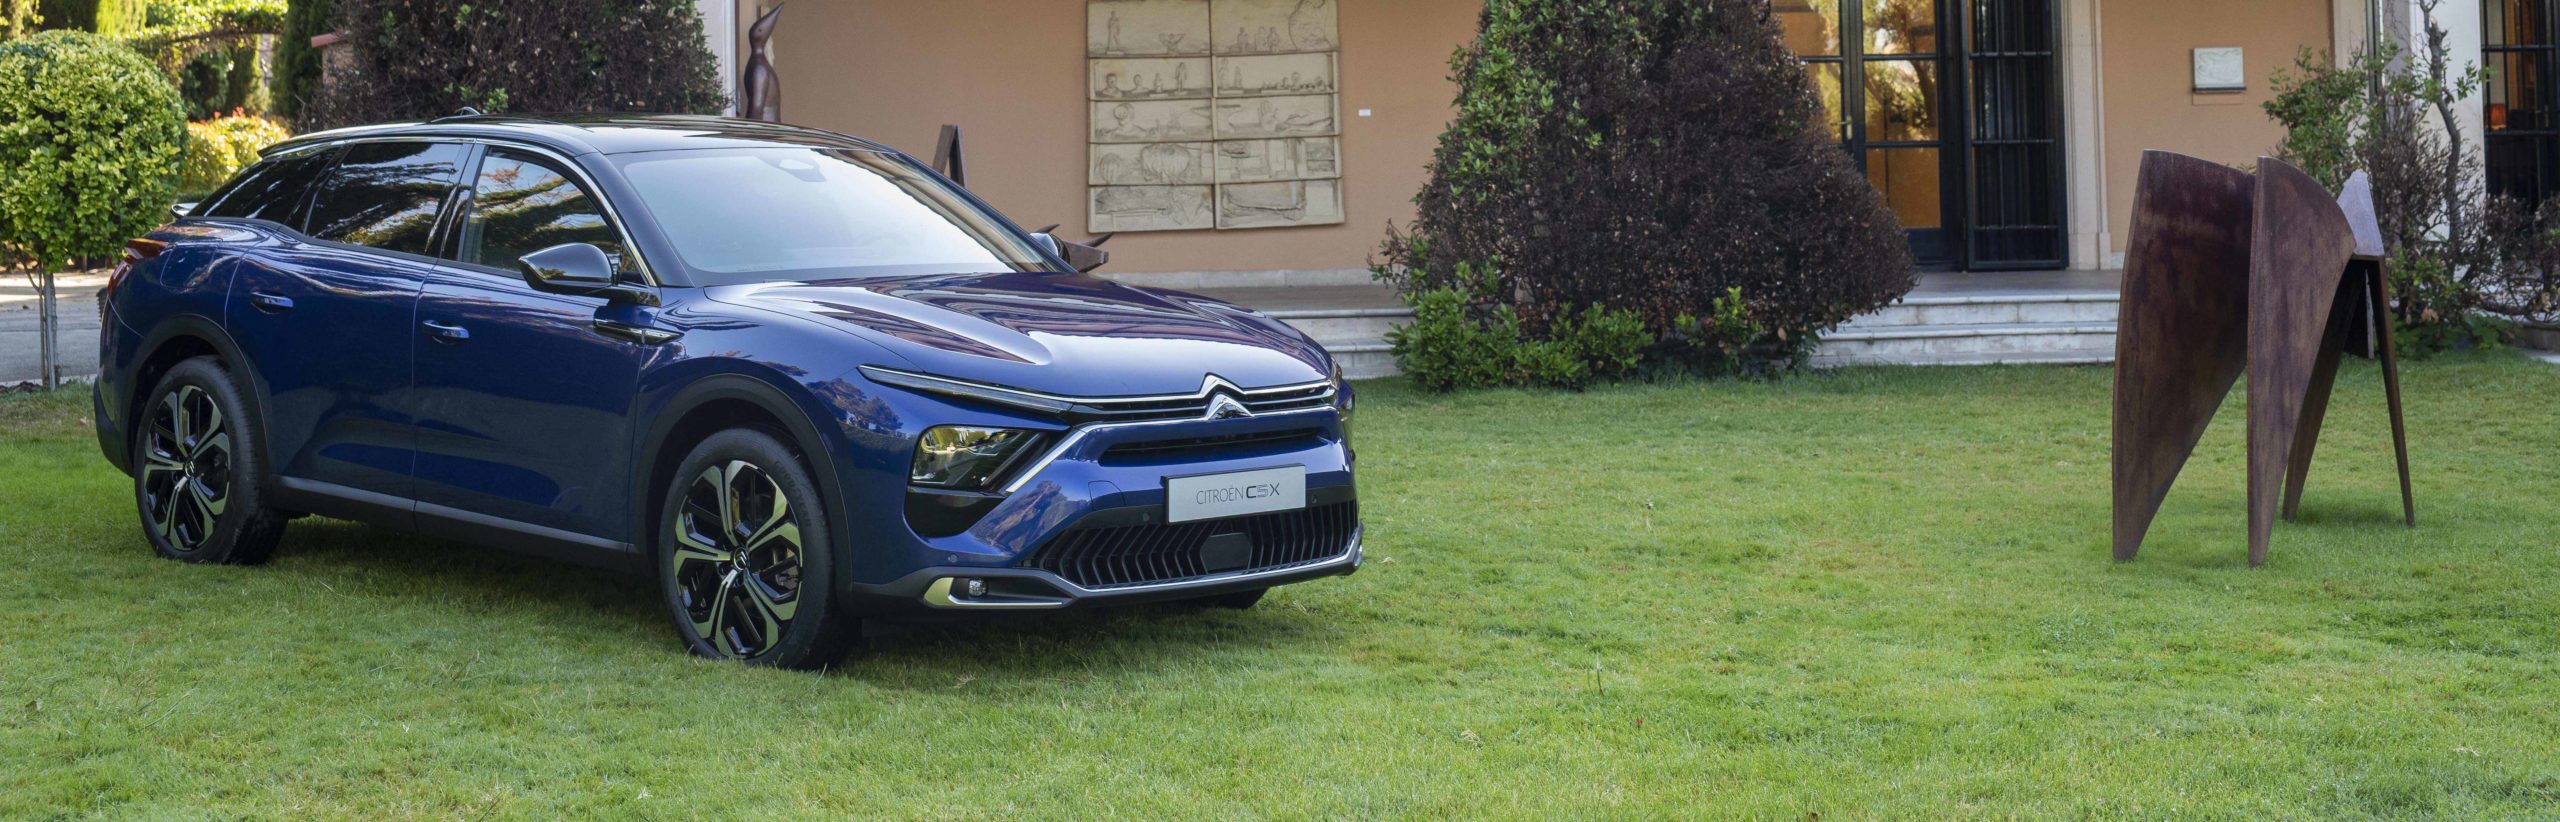 Citroën supera las 60.000 matriculaciones en España